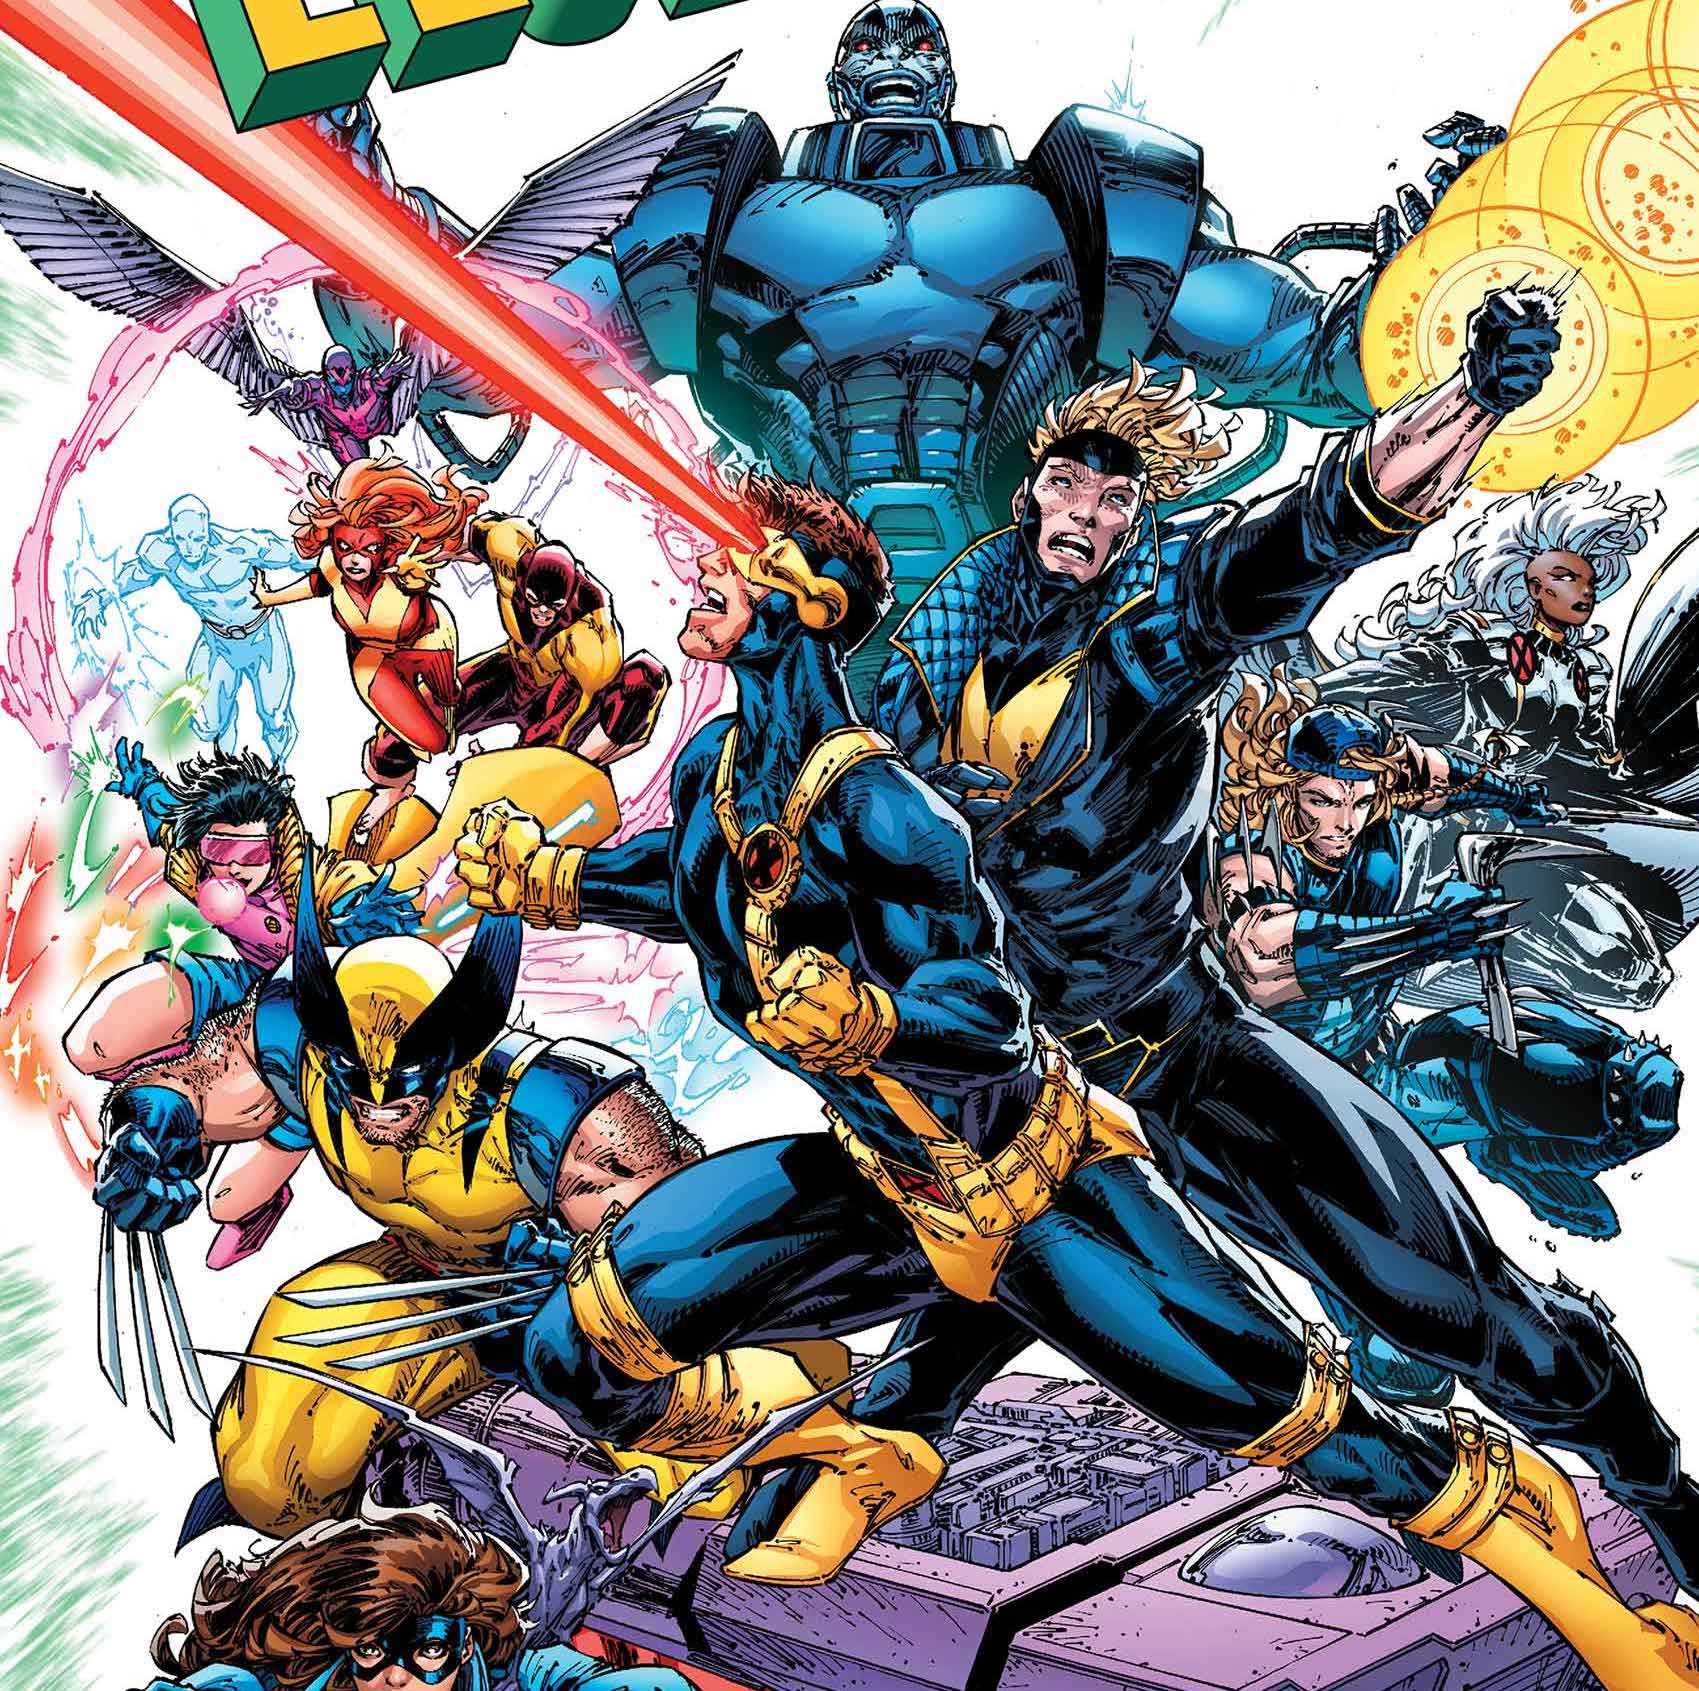 Marvel announces brand-new series 'X-Men Legends' for February 2021